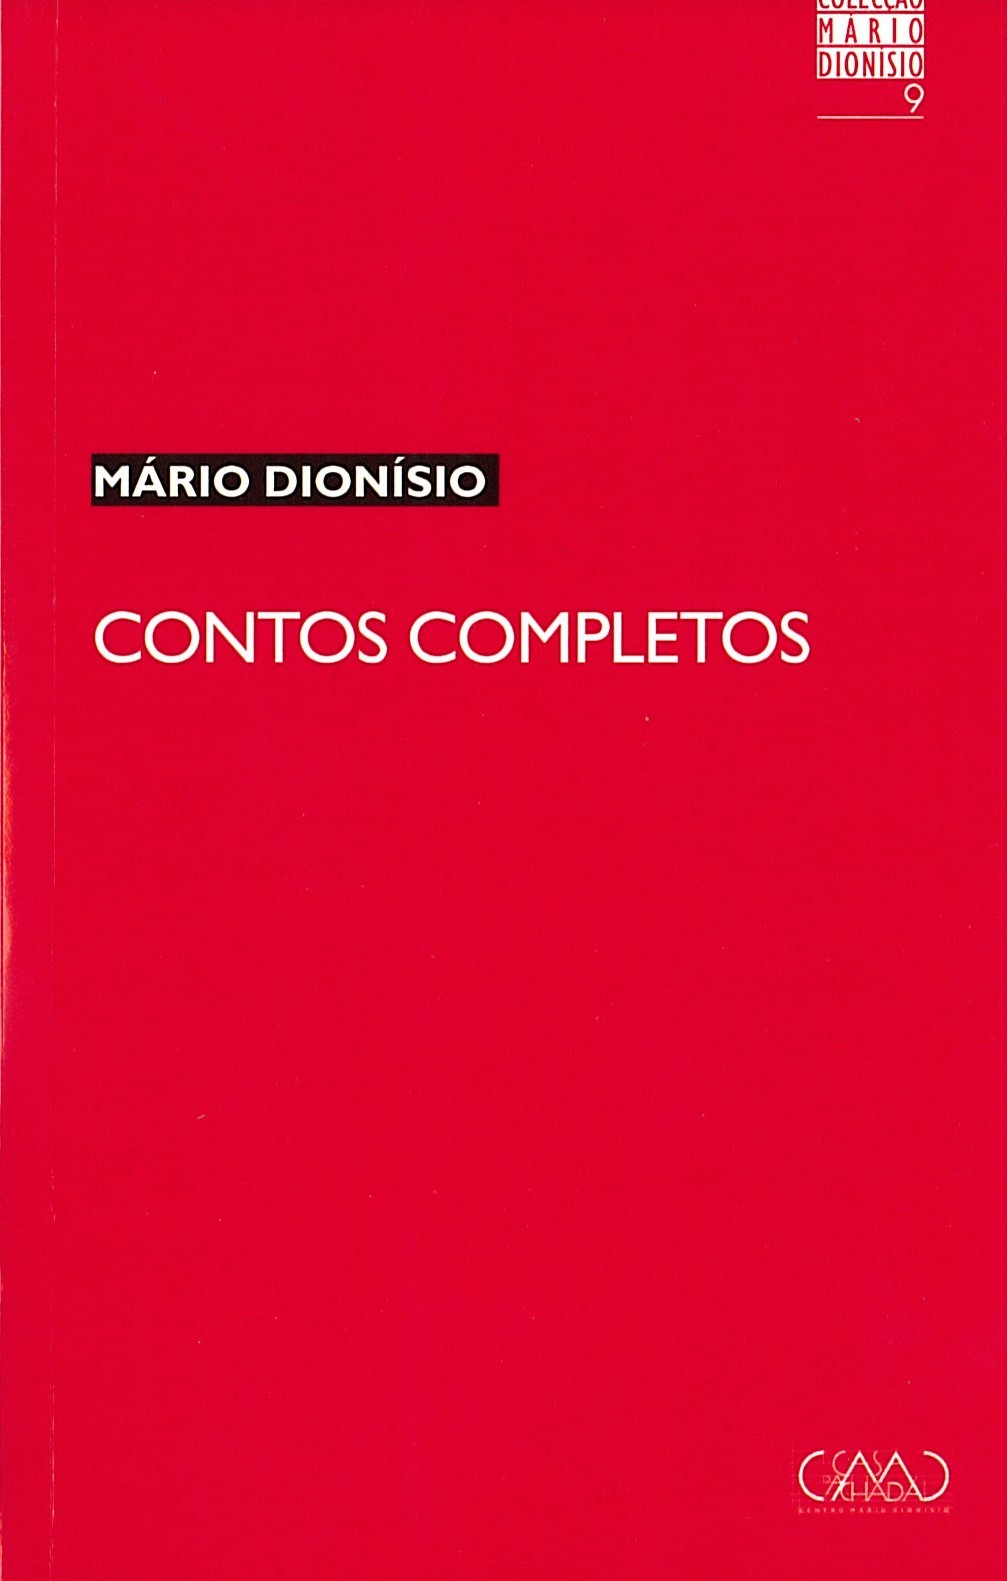 Mário Dionísio - Contos completos